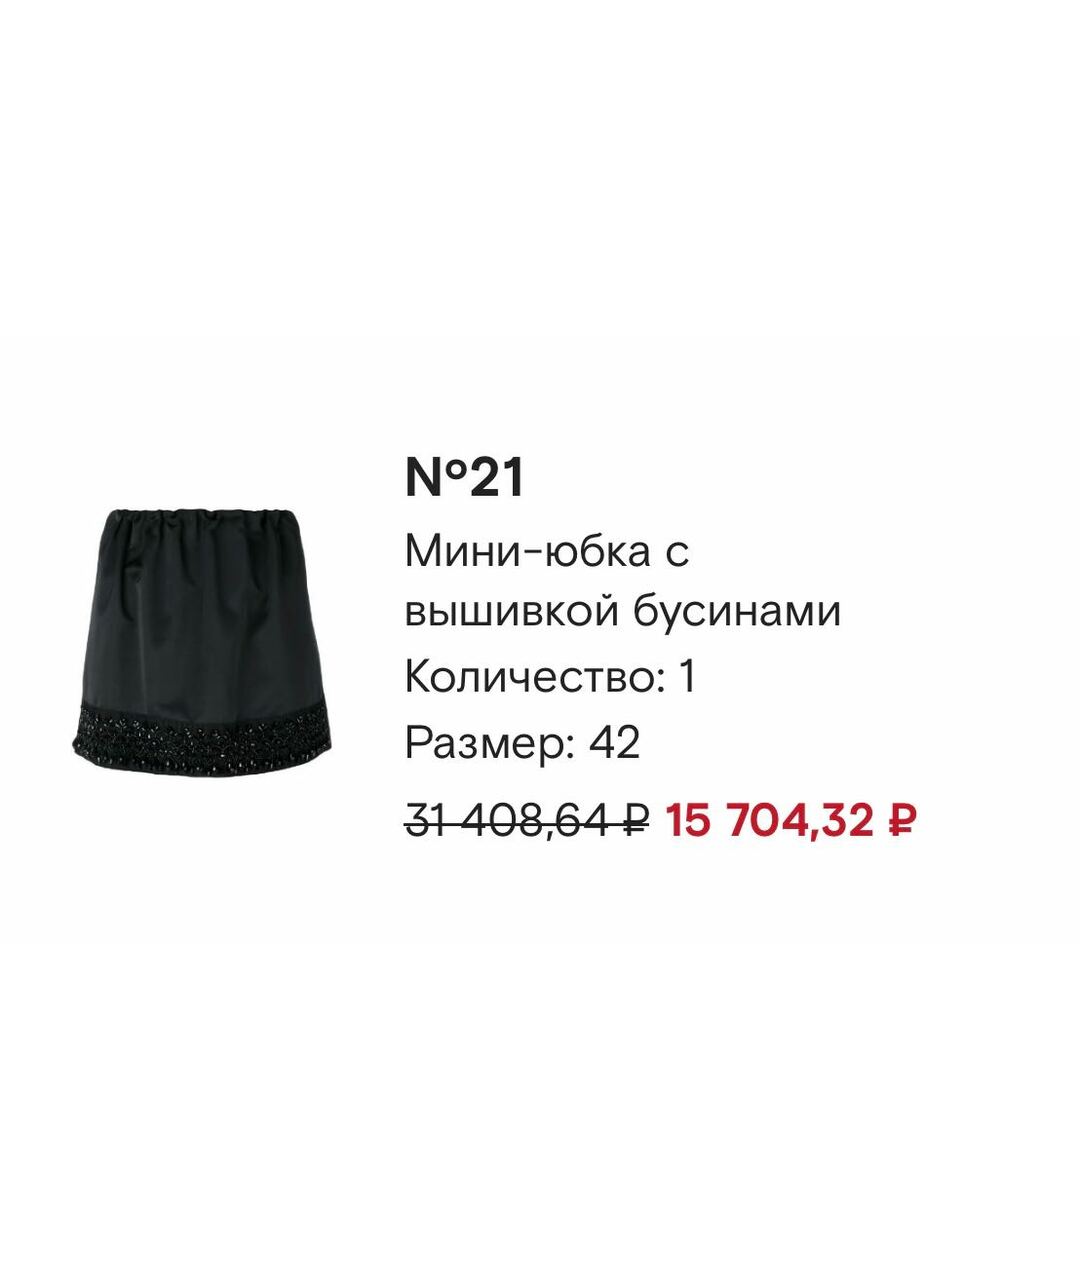 NO. 21 Черная полиэстеровая юбка мини, фото 7